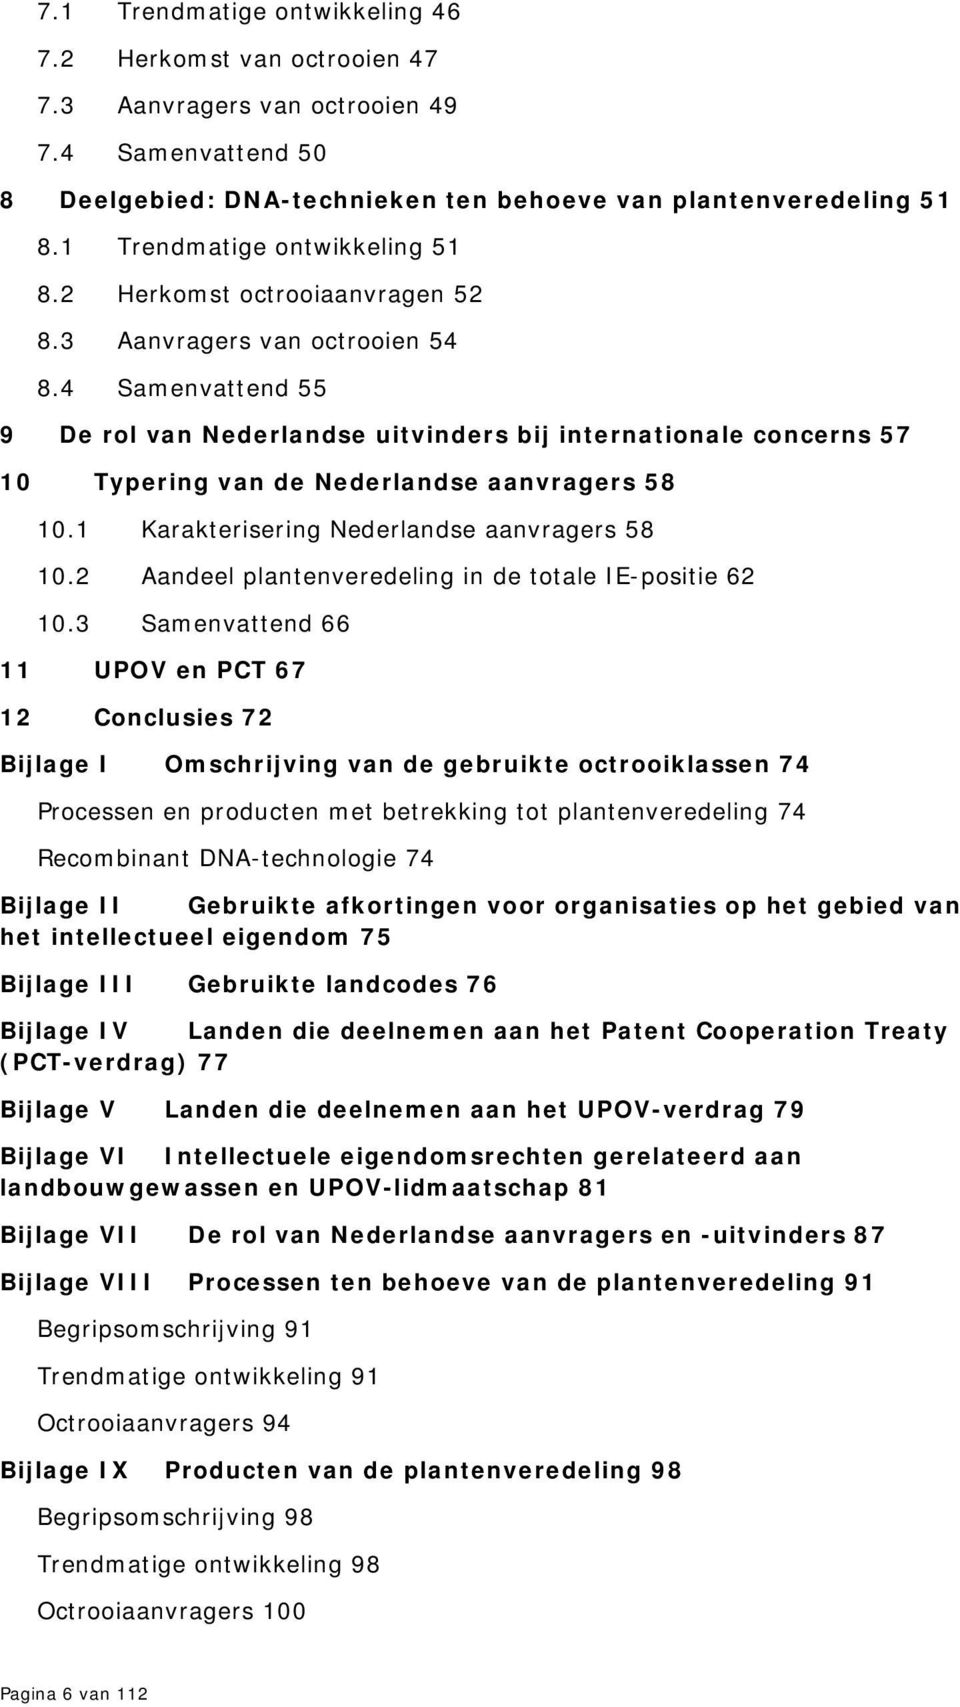 4 Samenvattend 55 9 De rol van Nederlandse uitvinders bij internationale concerns 57 10 Typering van de Nederlandse aanvragers 58 10.1 Karakterisering Nederlandse aanvragers 58 10.